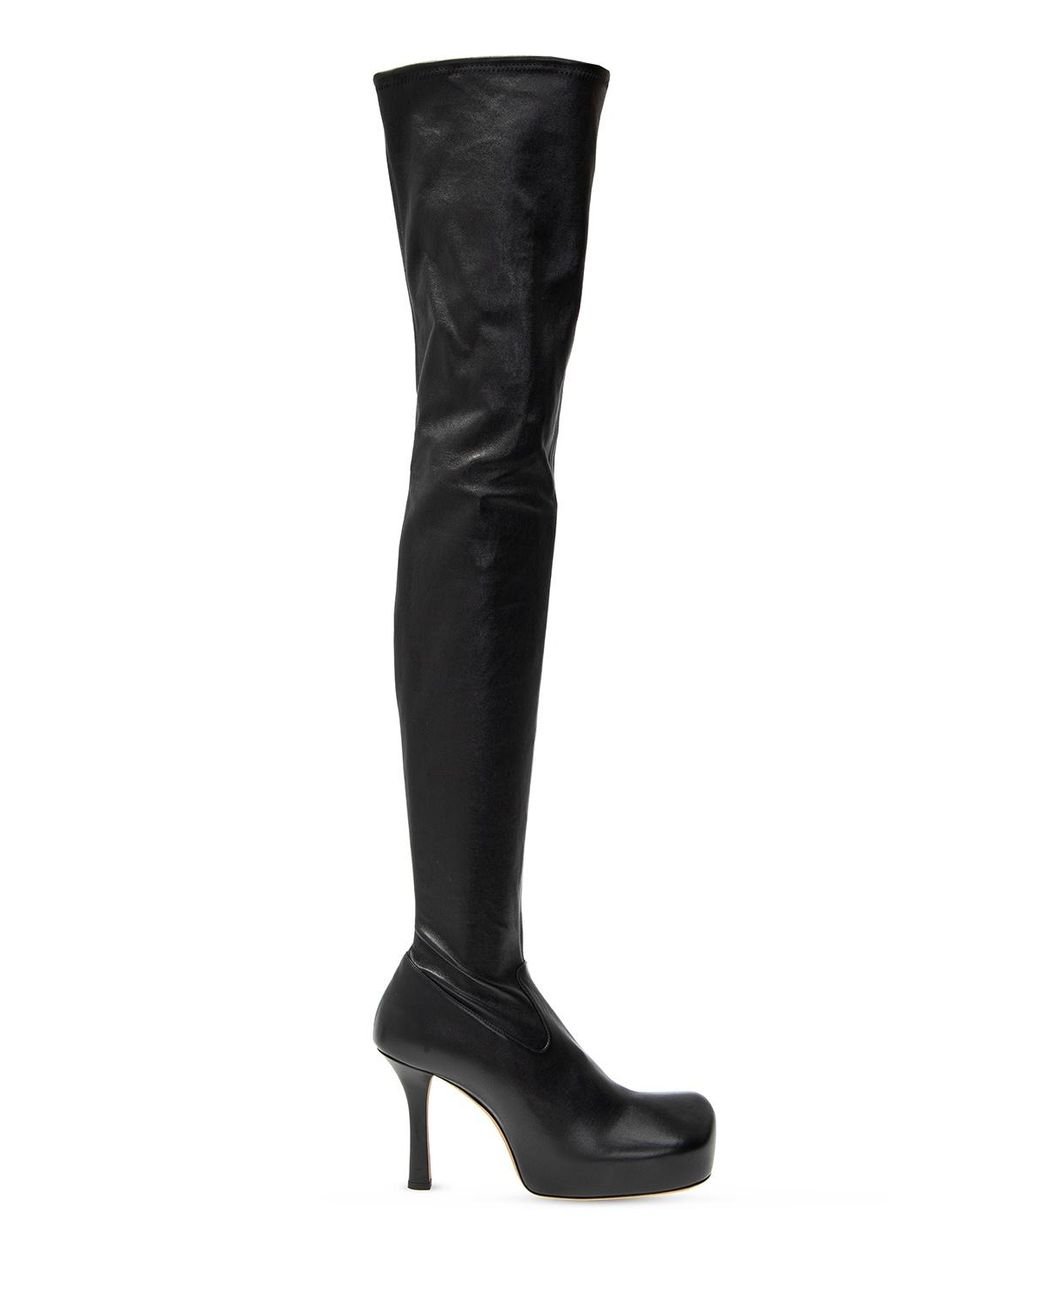 Bottega Veneta Bv Bold Square-toe Leather Over-the-knee Boots in Black